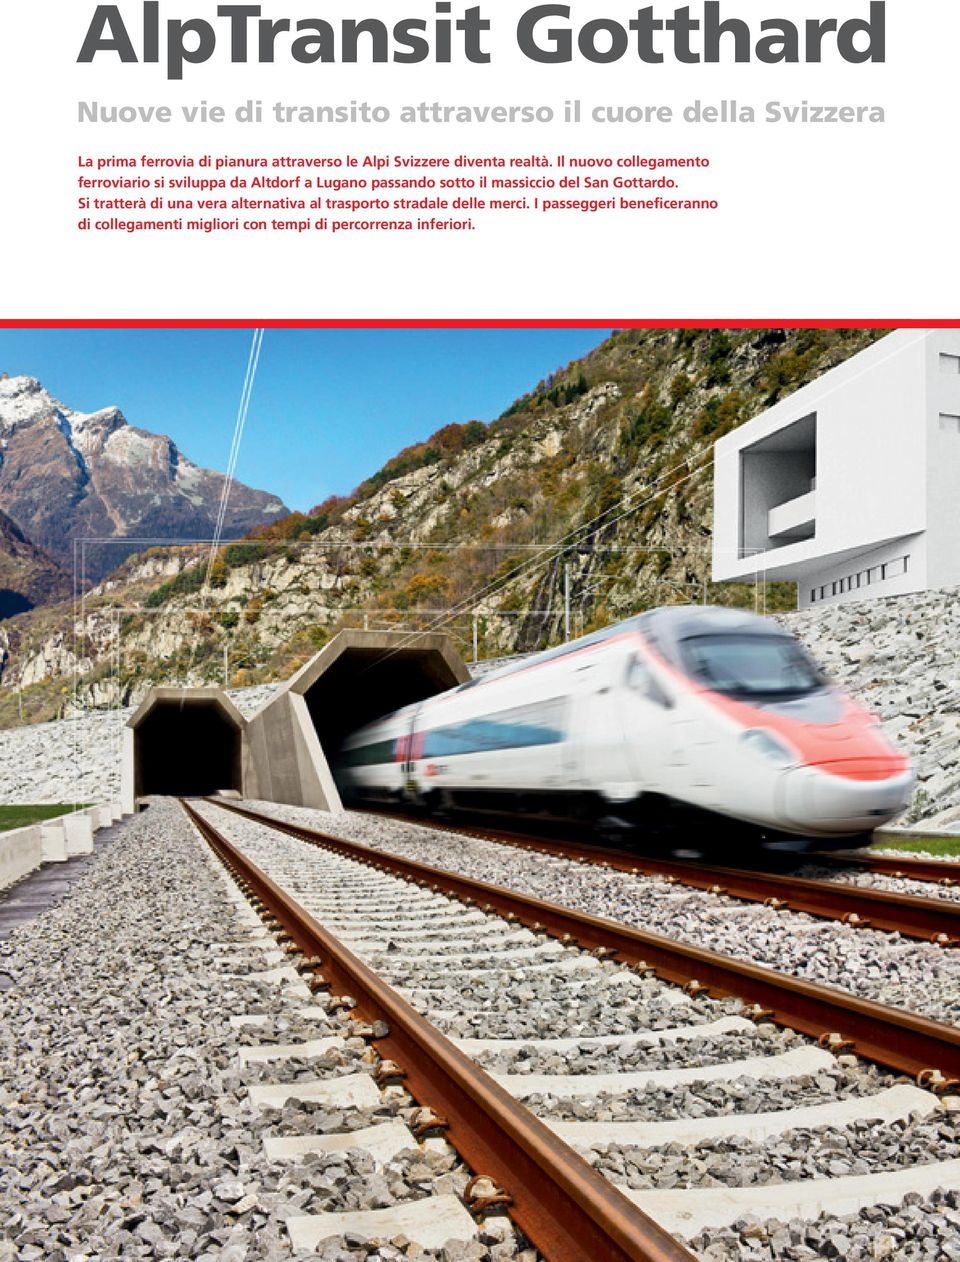 Il nuovo collegamento ferroviario si sviluppa da Altdorf a Lugano passando sotto il massiccio del San